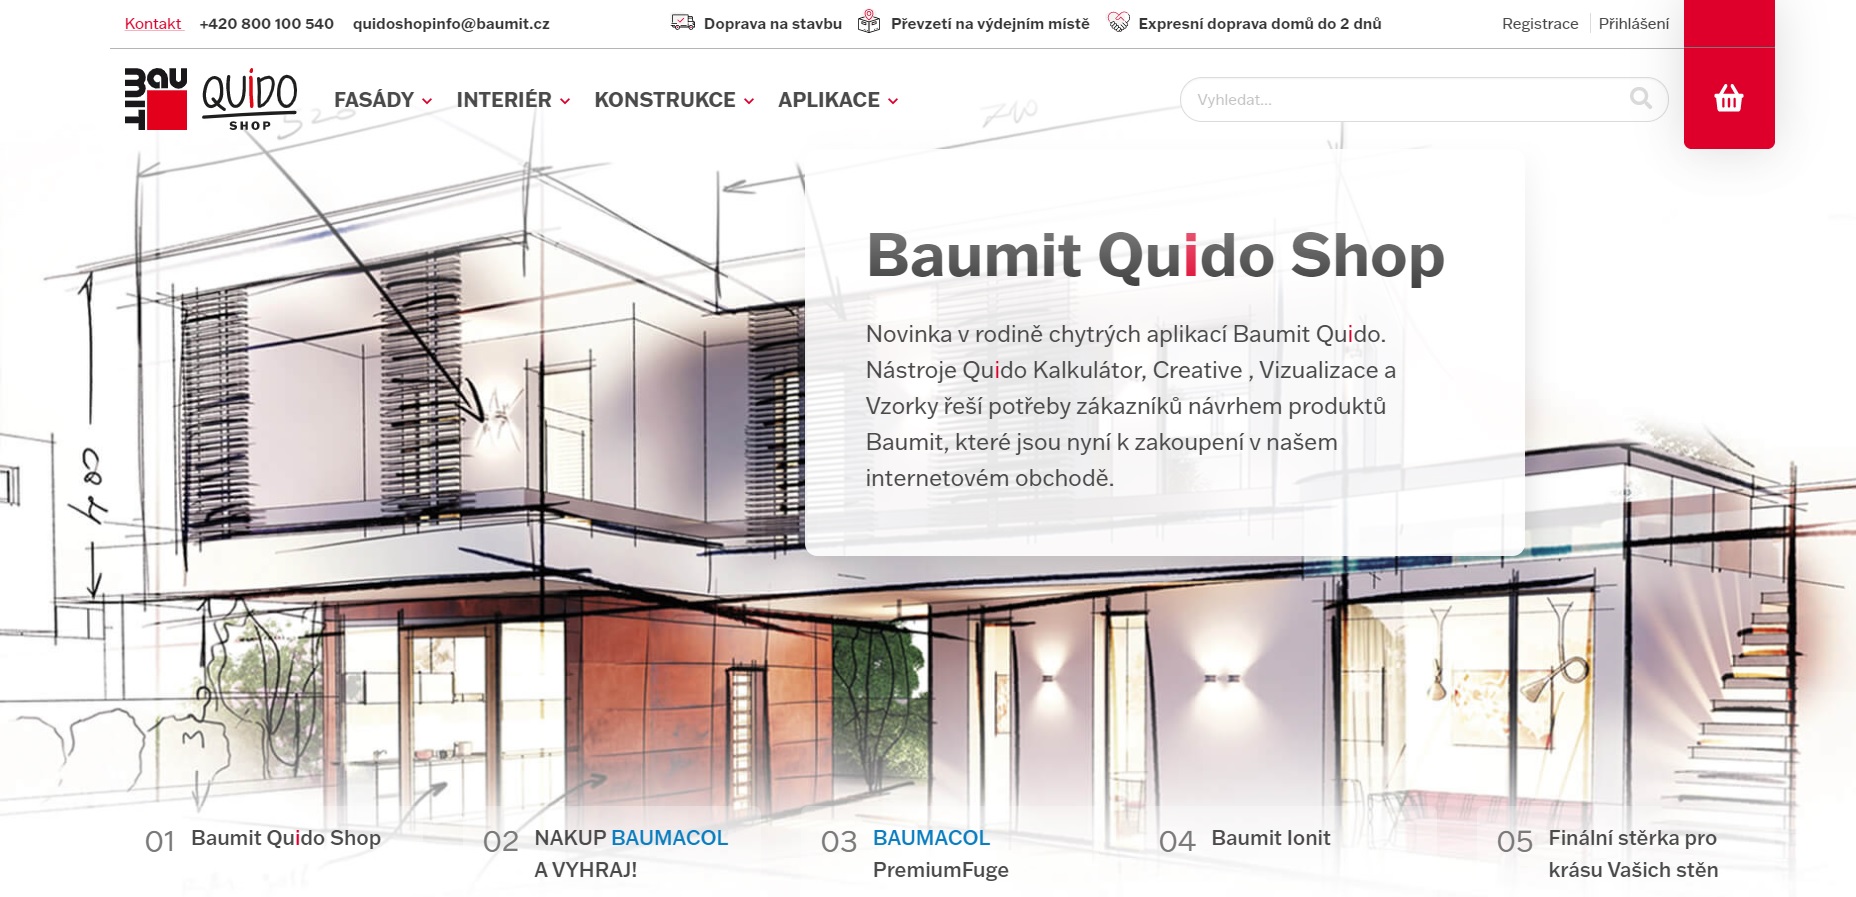 Baumit Quido Shop – unikátní průvodce pro on-line nákup